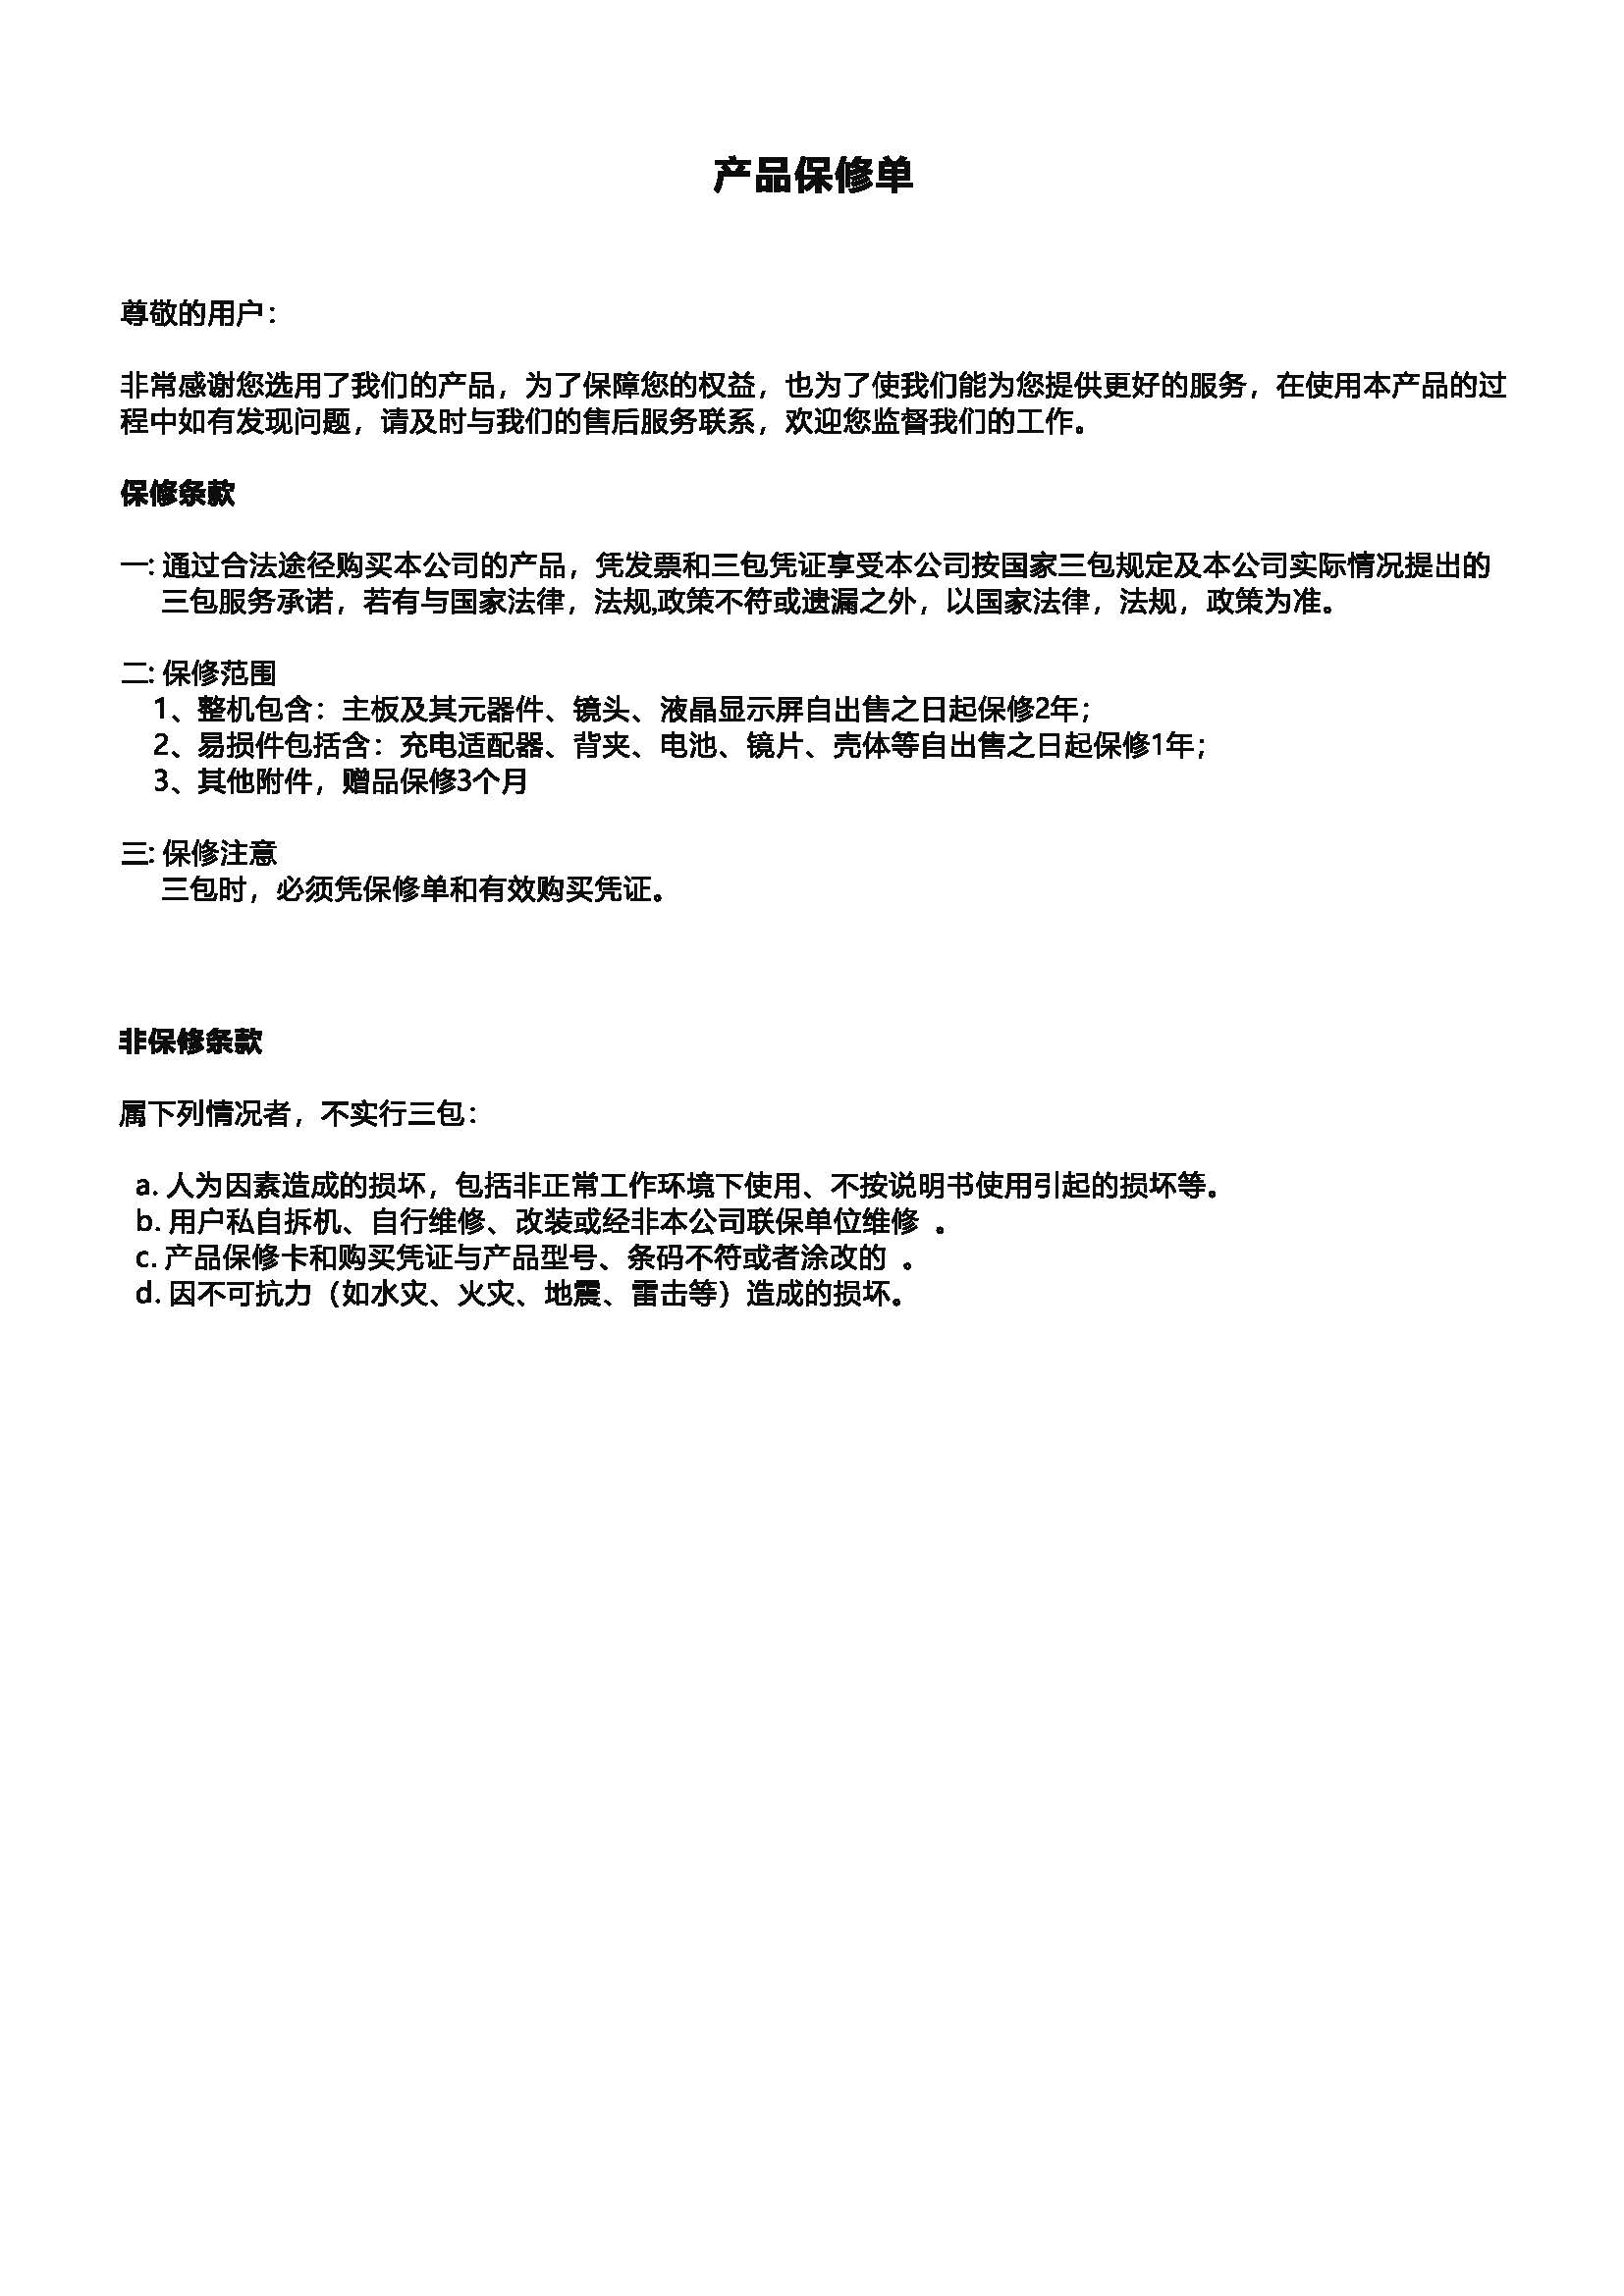 银翔DSJ-YXZA1Y2智能执法仪操作说明_页面_11.jpg